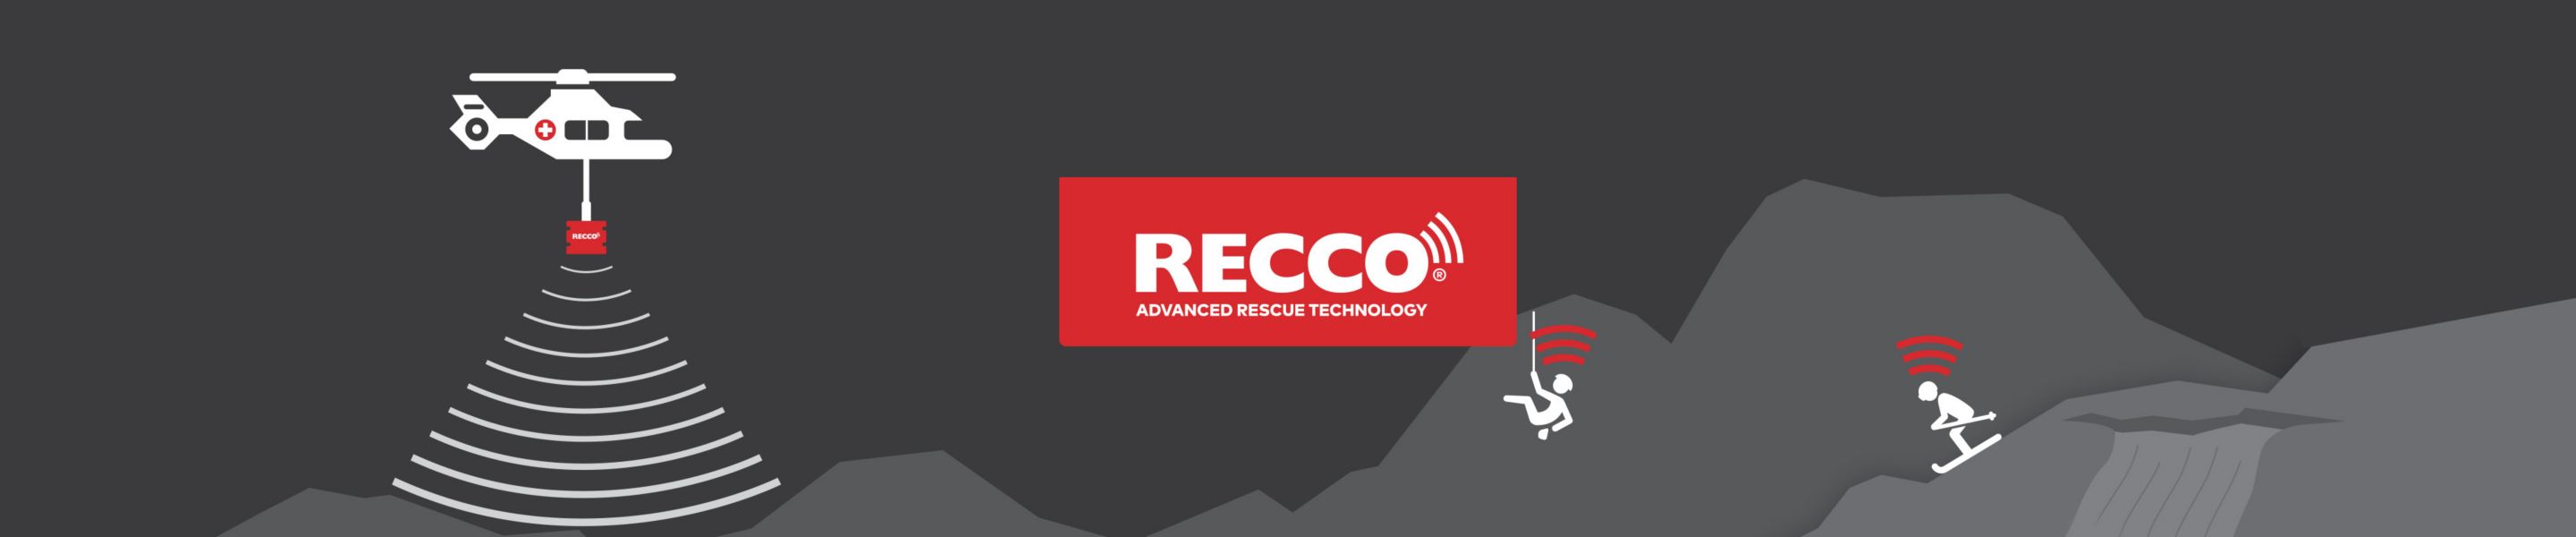 recco advanced rescue technology